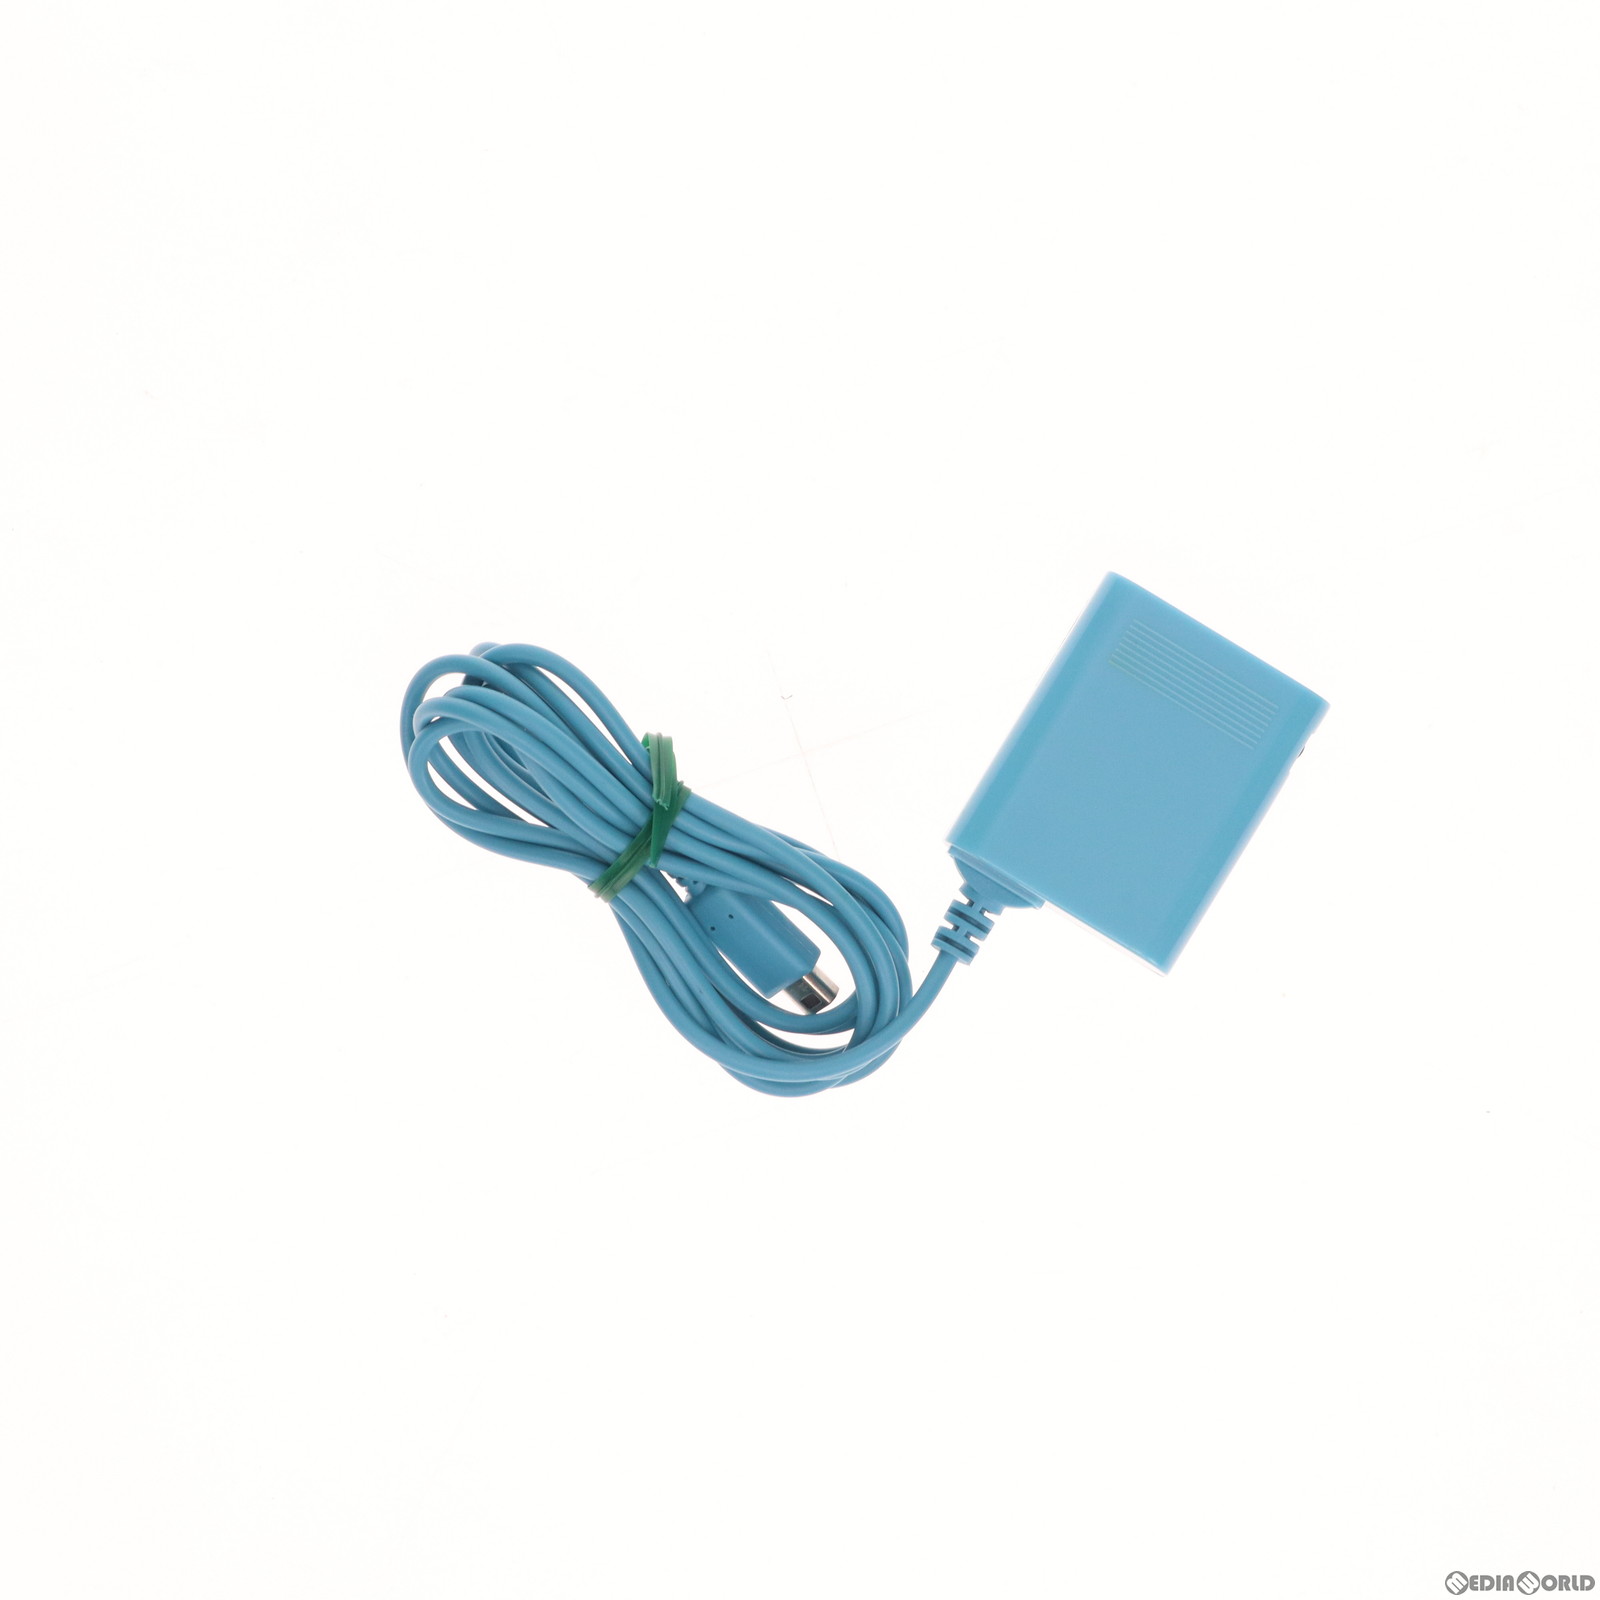 【中古即納】[ACC][3DS]ミニACアダプタD3(3DS用) ブルー リンクスプロダクツ(LX-ND3-008)(20110226)